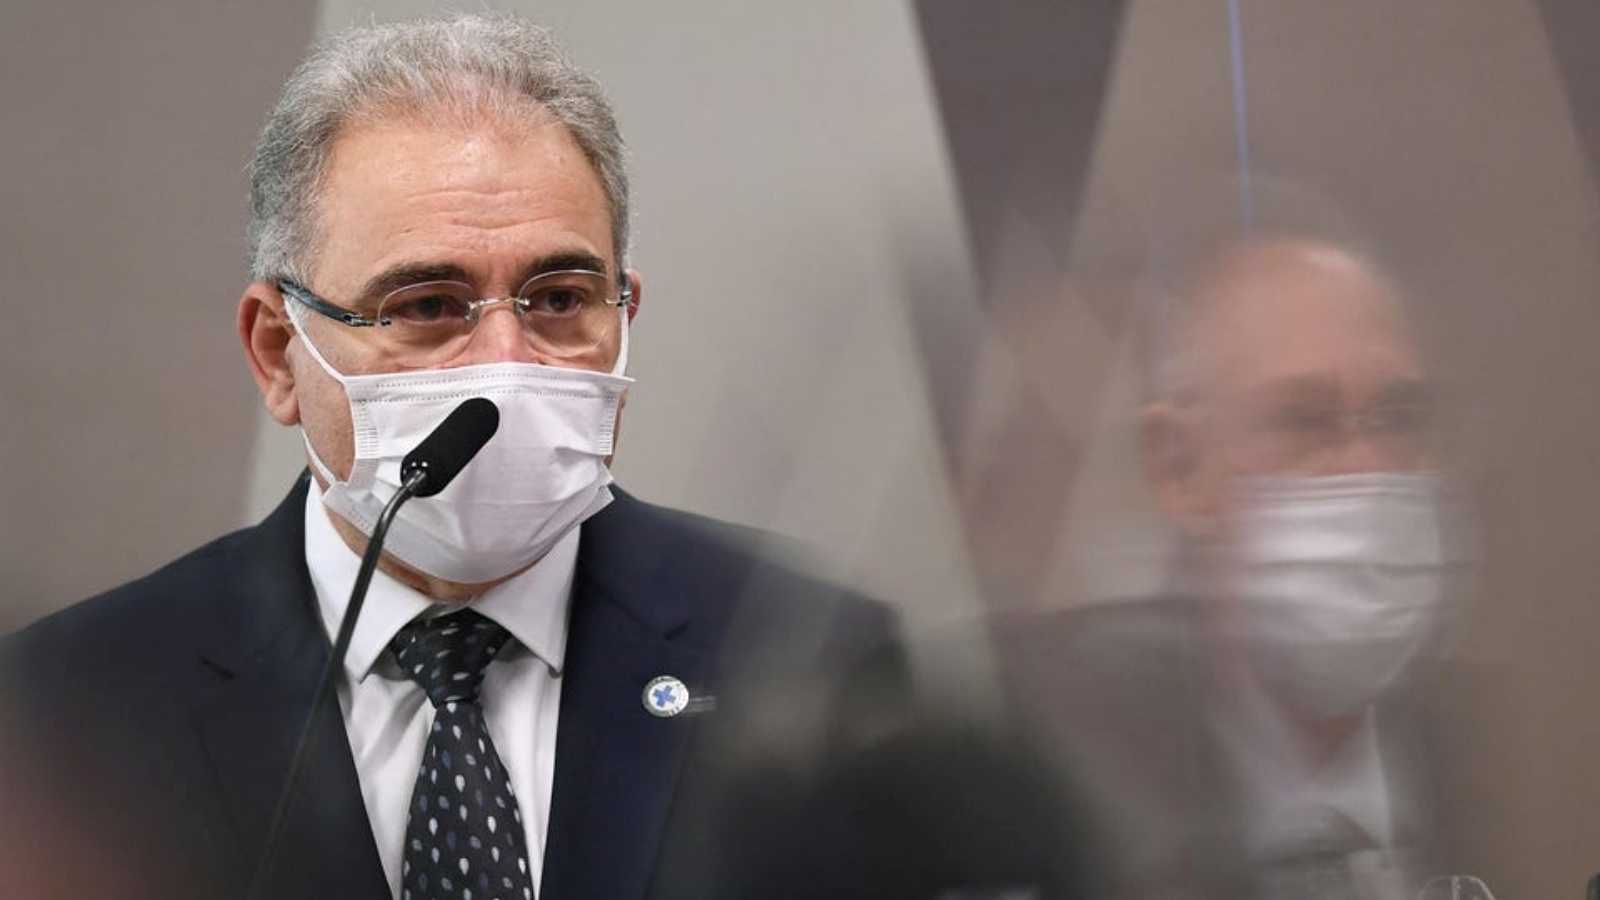 وزير الصحة البرازيلي مارسيلو كيروغا يتحدث خلال جلسة للجنة البرلمانية في برازيليا، البرازيل.